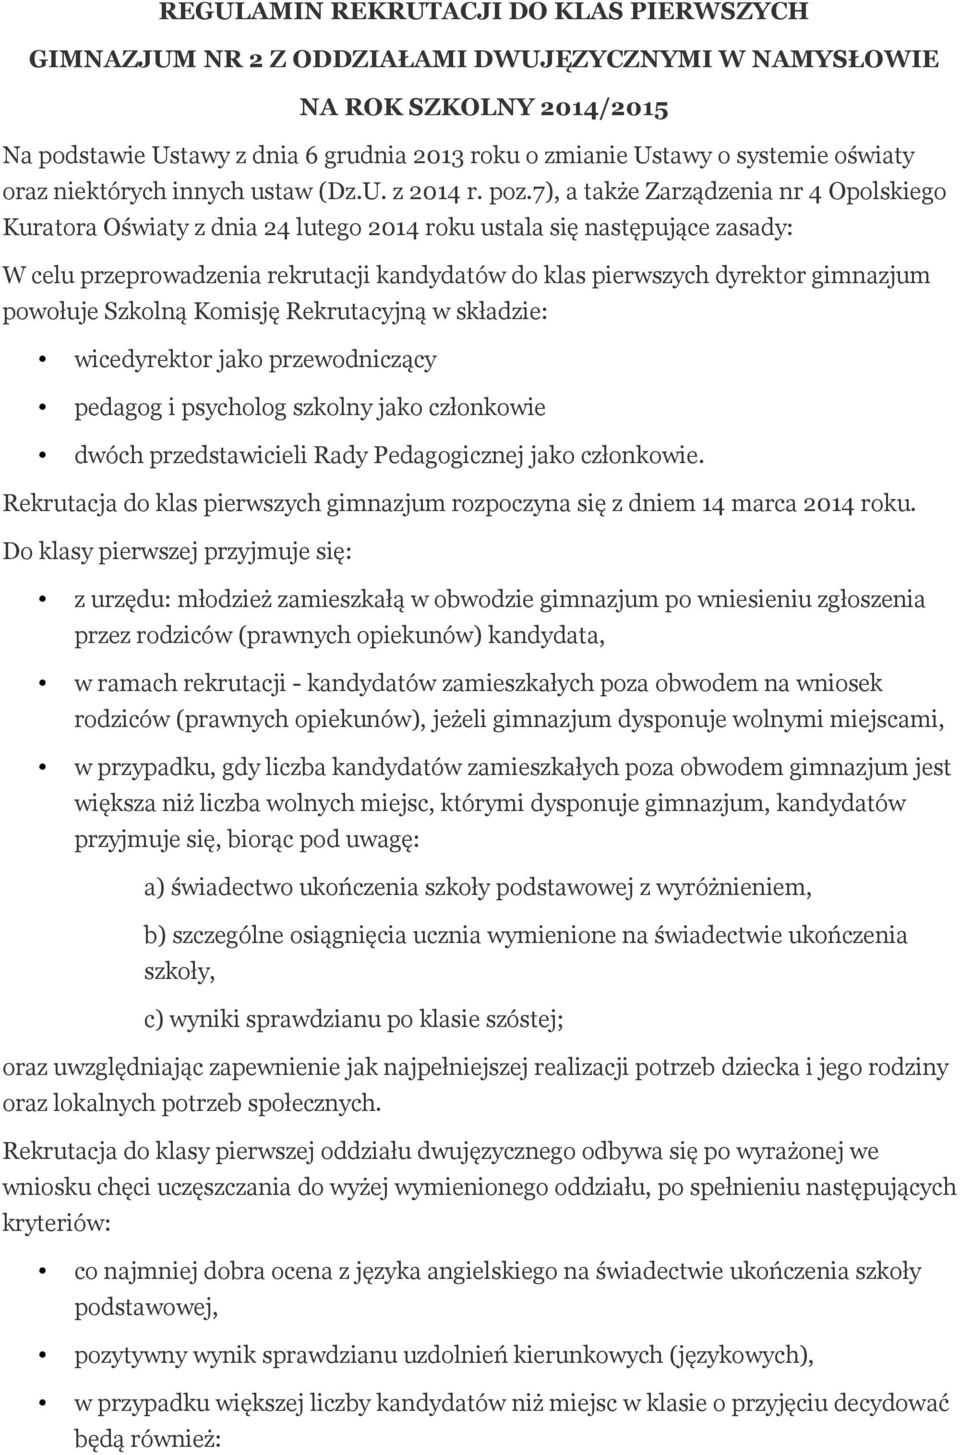 7), a także Zarządzenia nr 4 Opolskiego Kuratora Oświaty z dnia 24 lutego 2014 roku ustala się następujące zasady: W celu przeprowadzenia rekrutacji kandydatów do klas pierwszych dyrektor gimnazjum